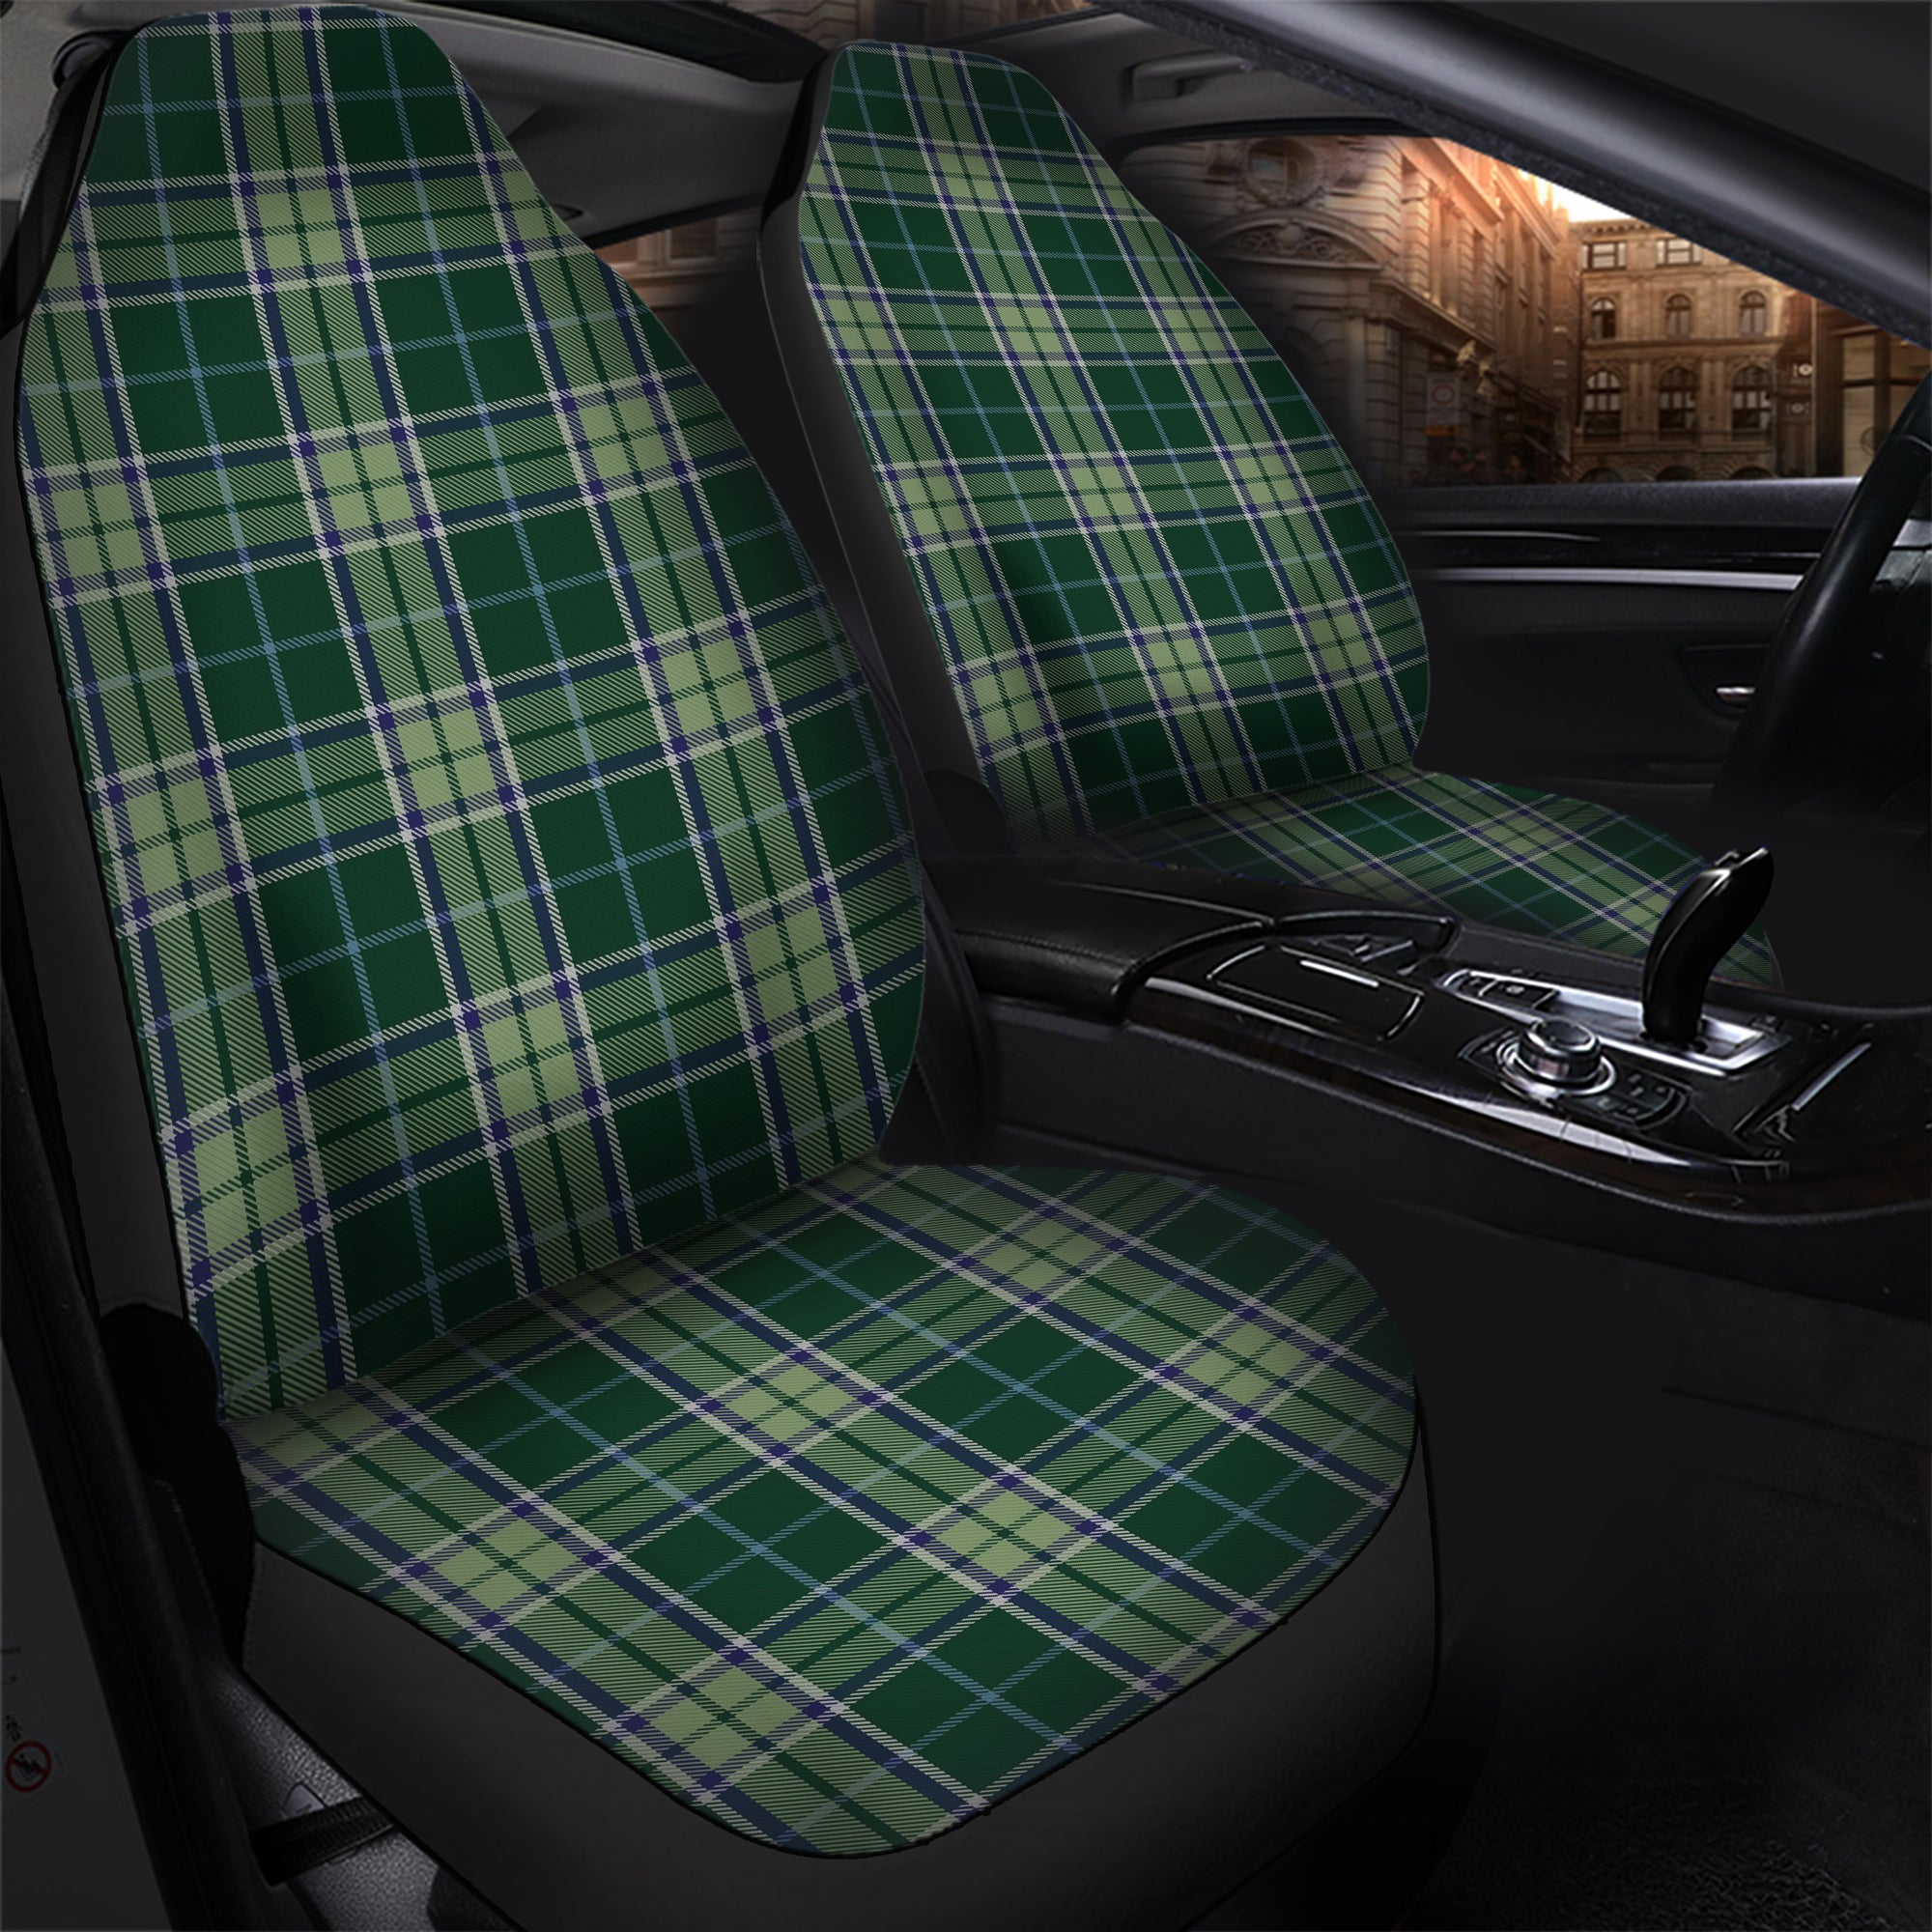 scottish-manx-ellan-vannin-clan-tartan-car-seat-cover